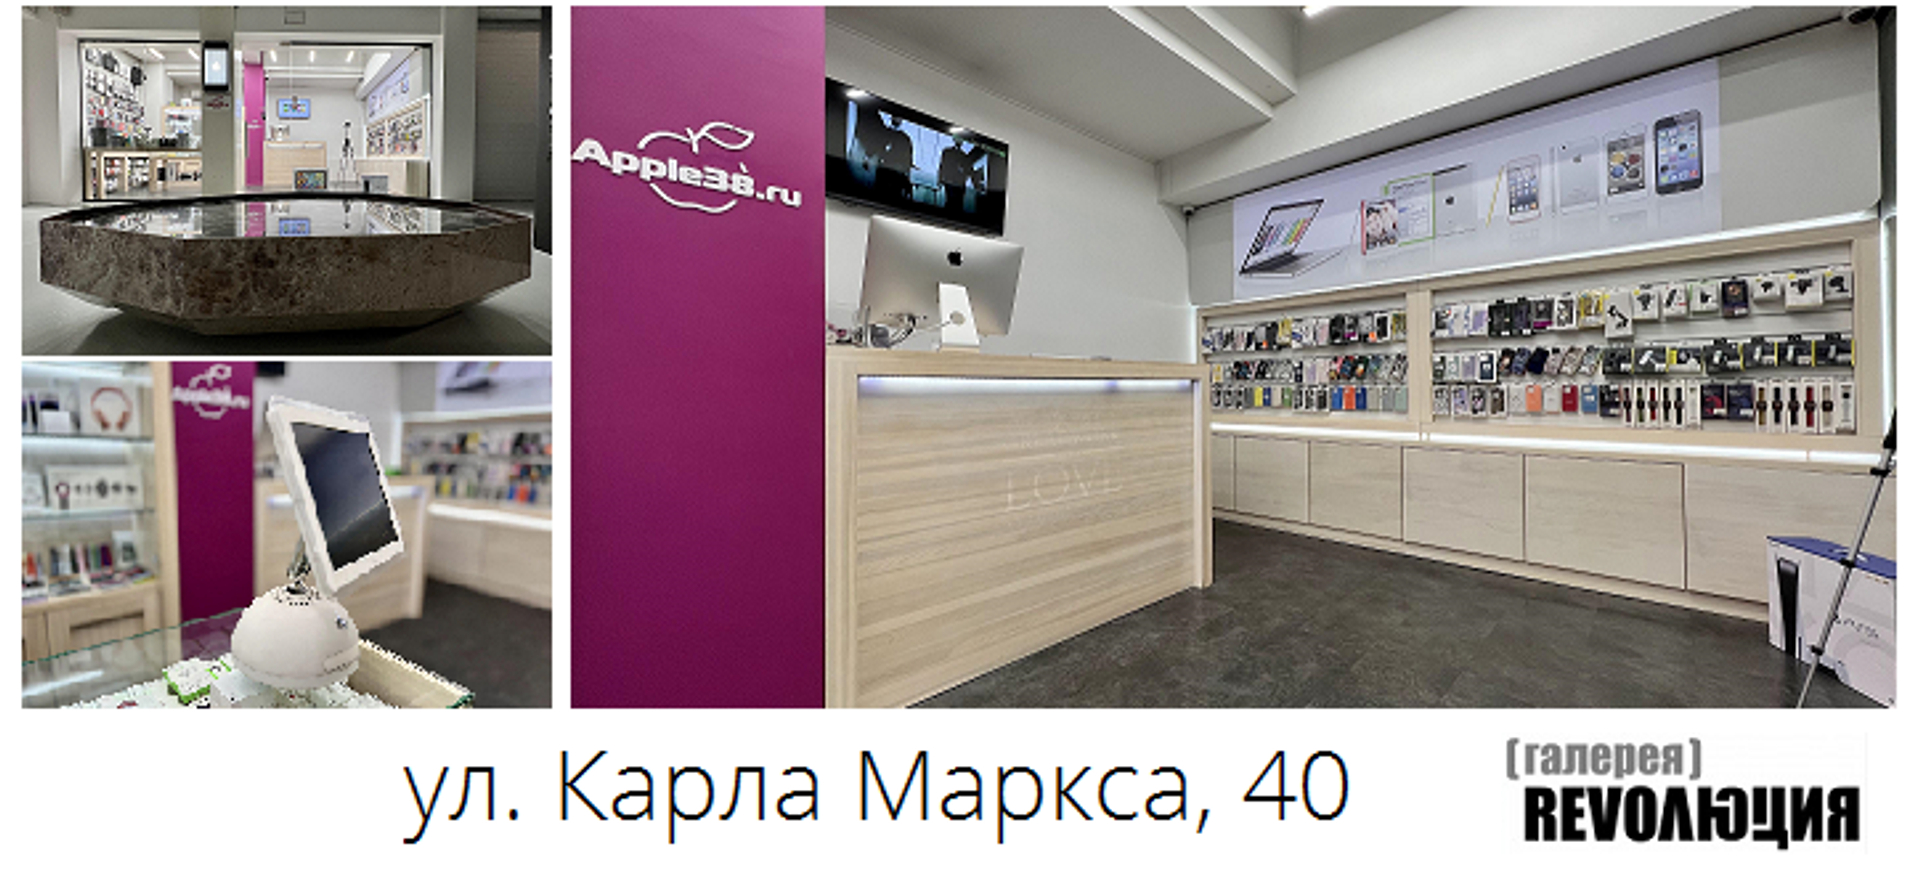 Купить Apple iPhone в Иркутске выгодно в Торгово-сервисном бутике Apple38.ru